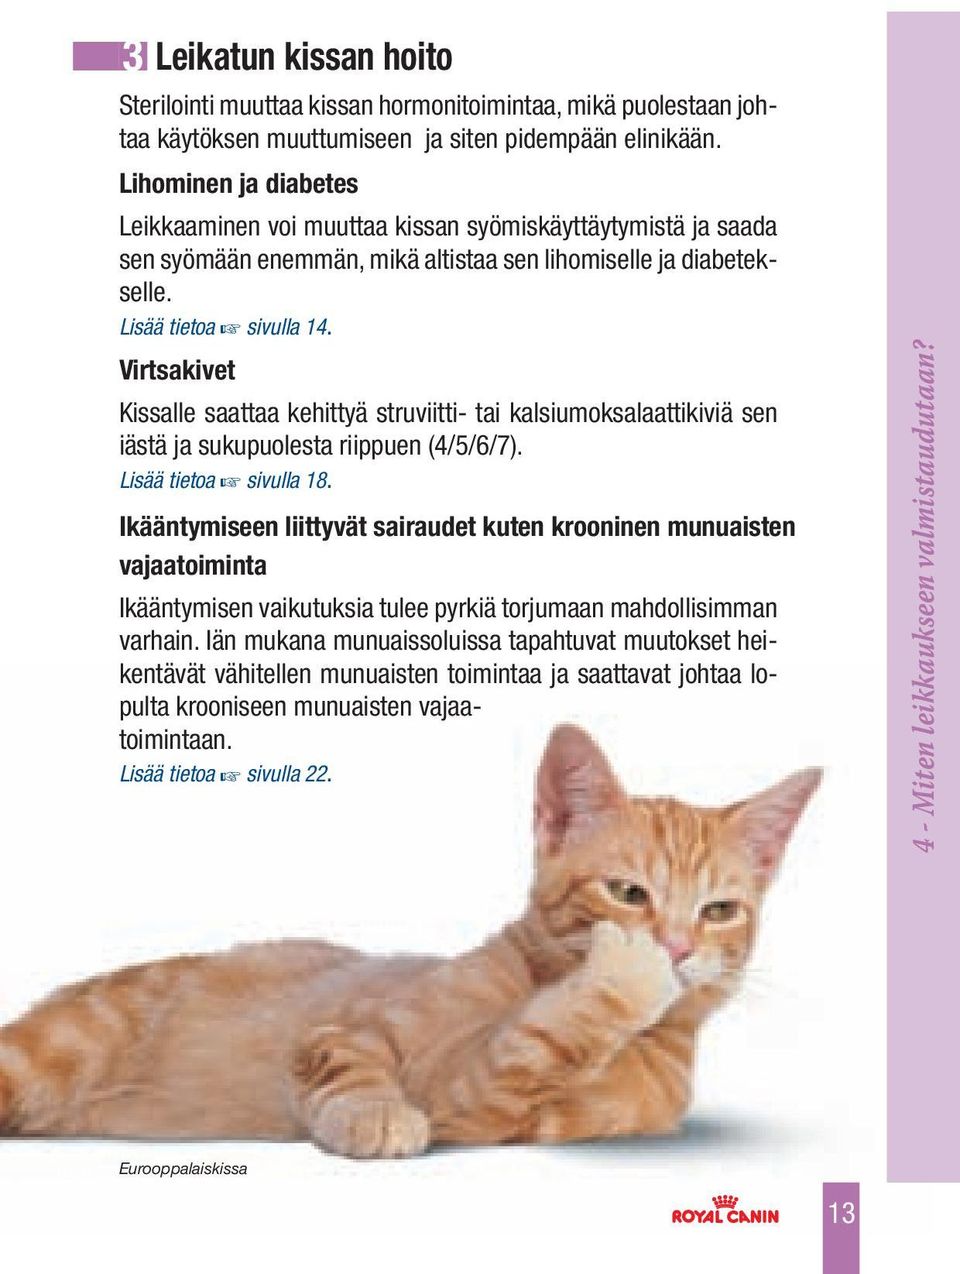 Virtsakivet Kissalle saattaa kehittyä struviitti- tai kalsiumoksalaattikiviä sen iästä ja sukupuolesta riippuen (4/5/6/7). Lisää tietoa sivulla 18.